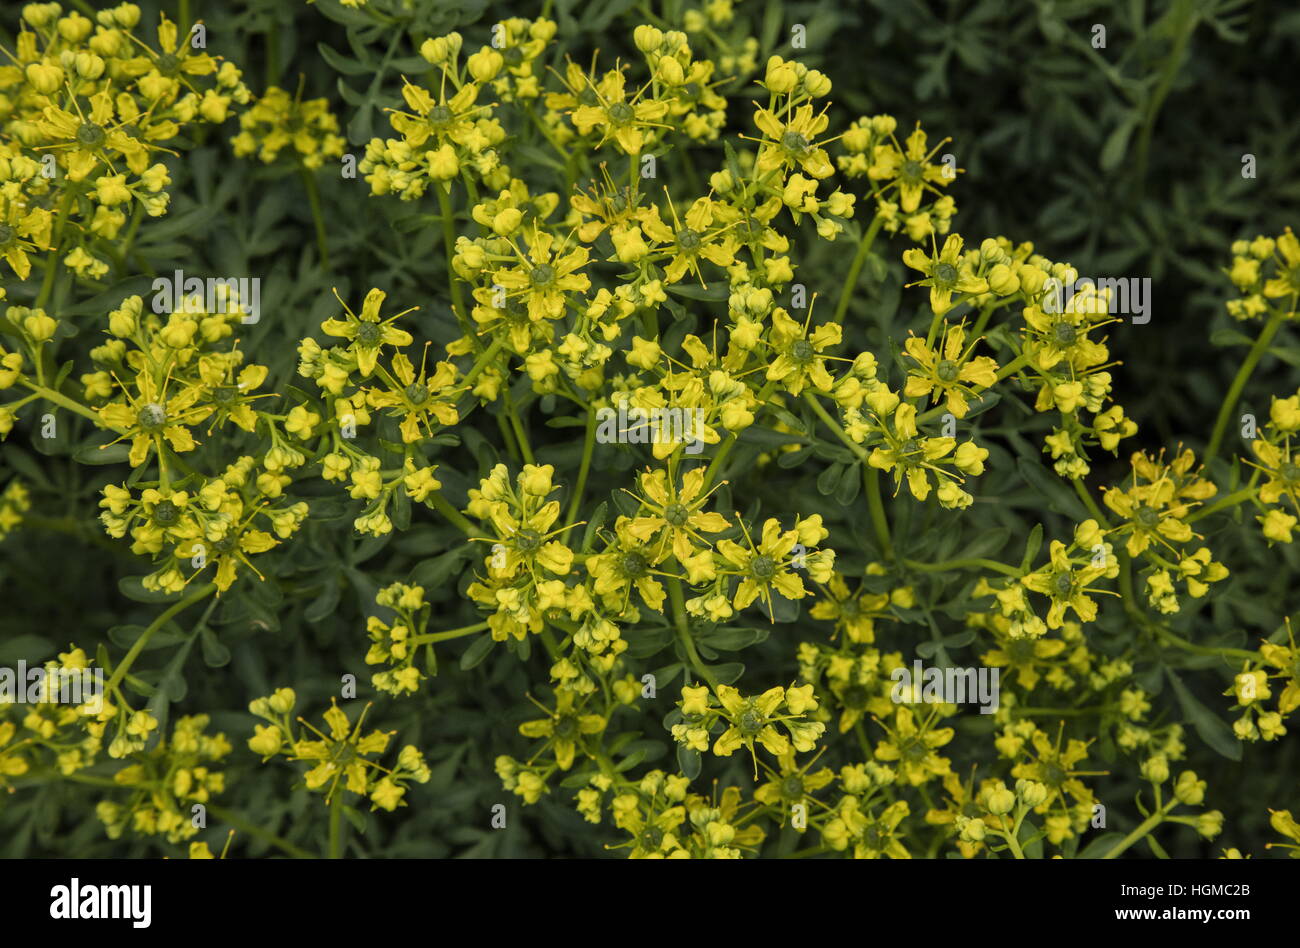 Gemeinsamen Rue oder Kraut-de-Grâce, Ruta Graveolens in Blüte, als Gartenpflanze. Stockfoto